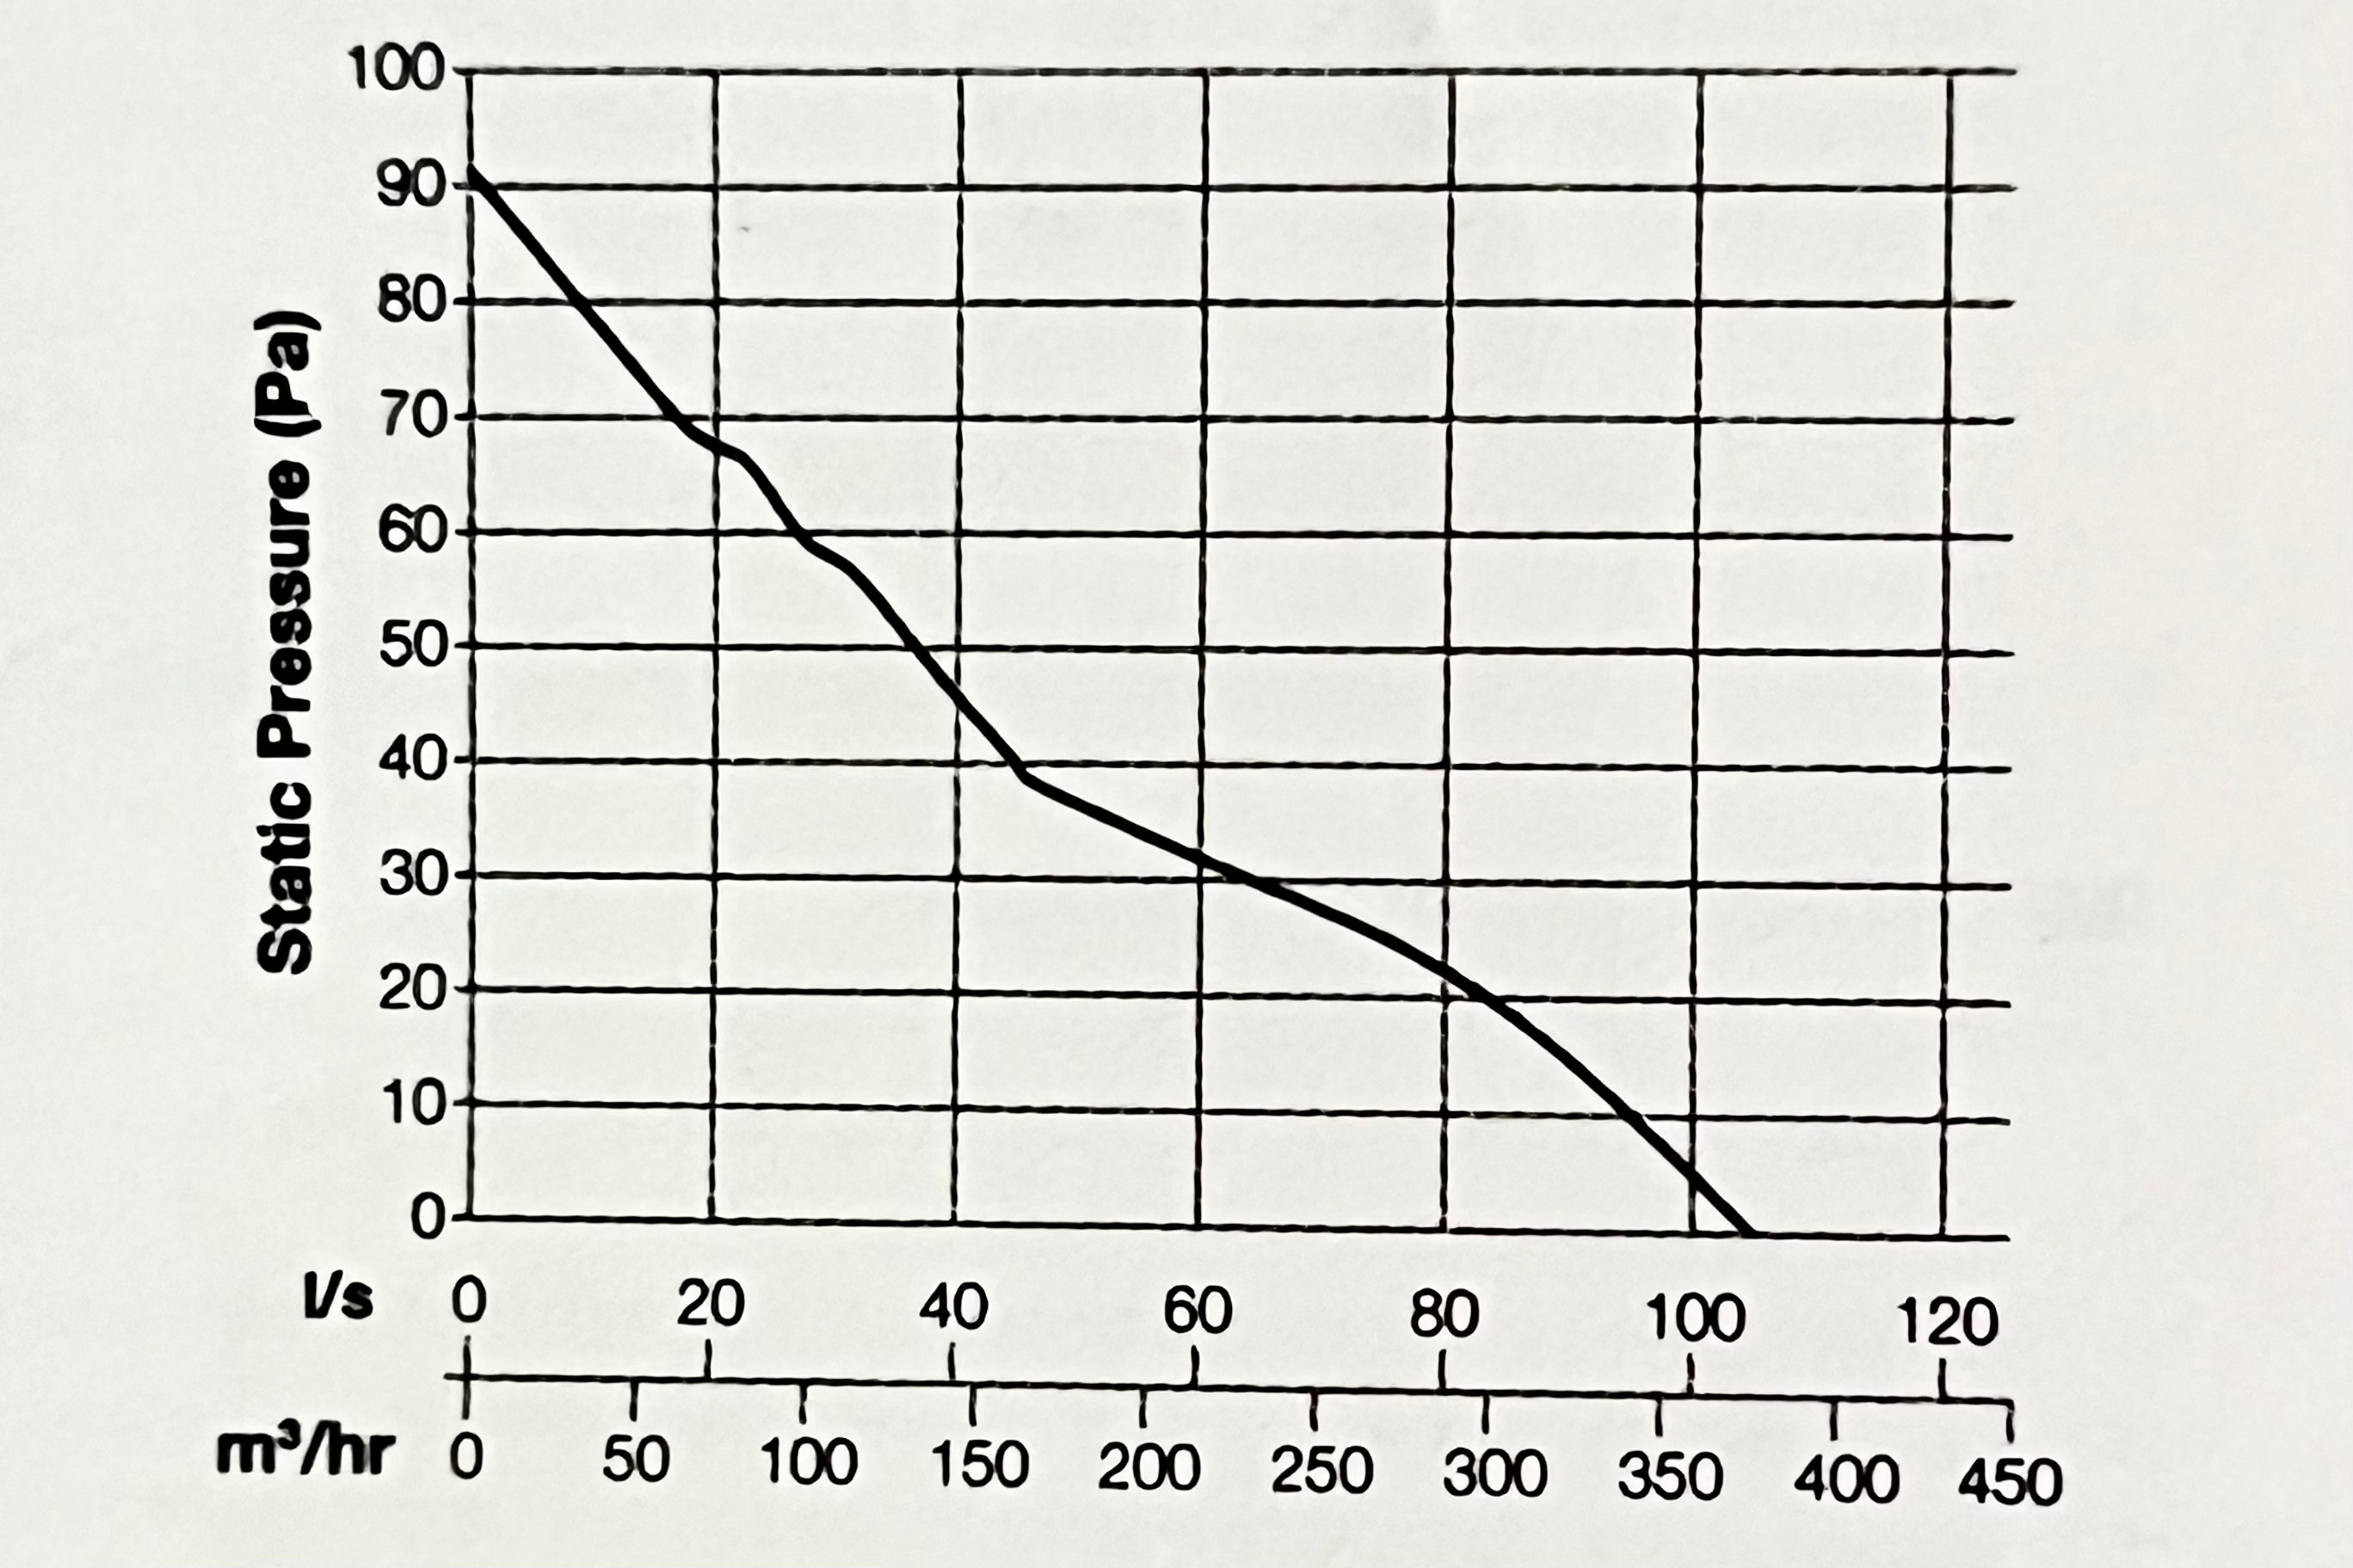 Manrose Hyper150 EC Pressure Curve